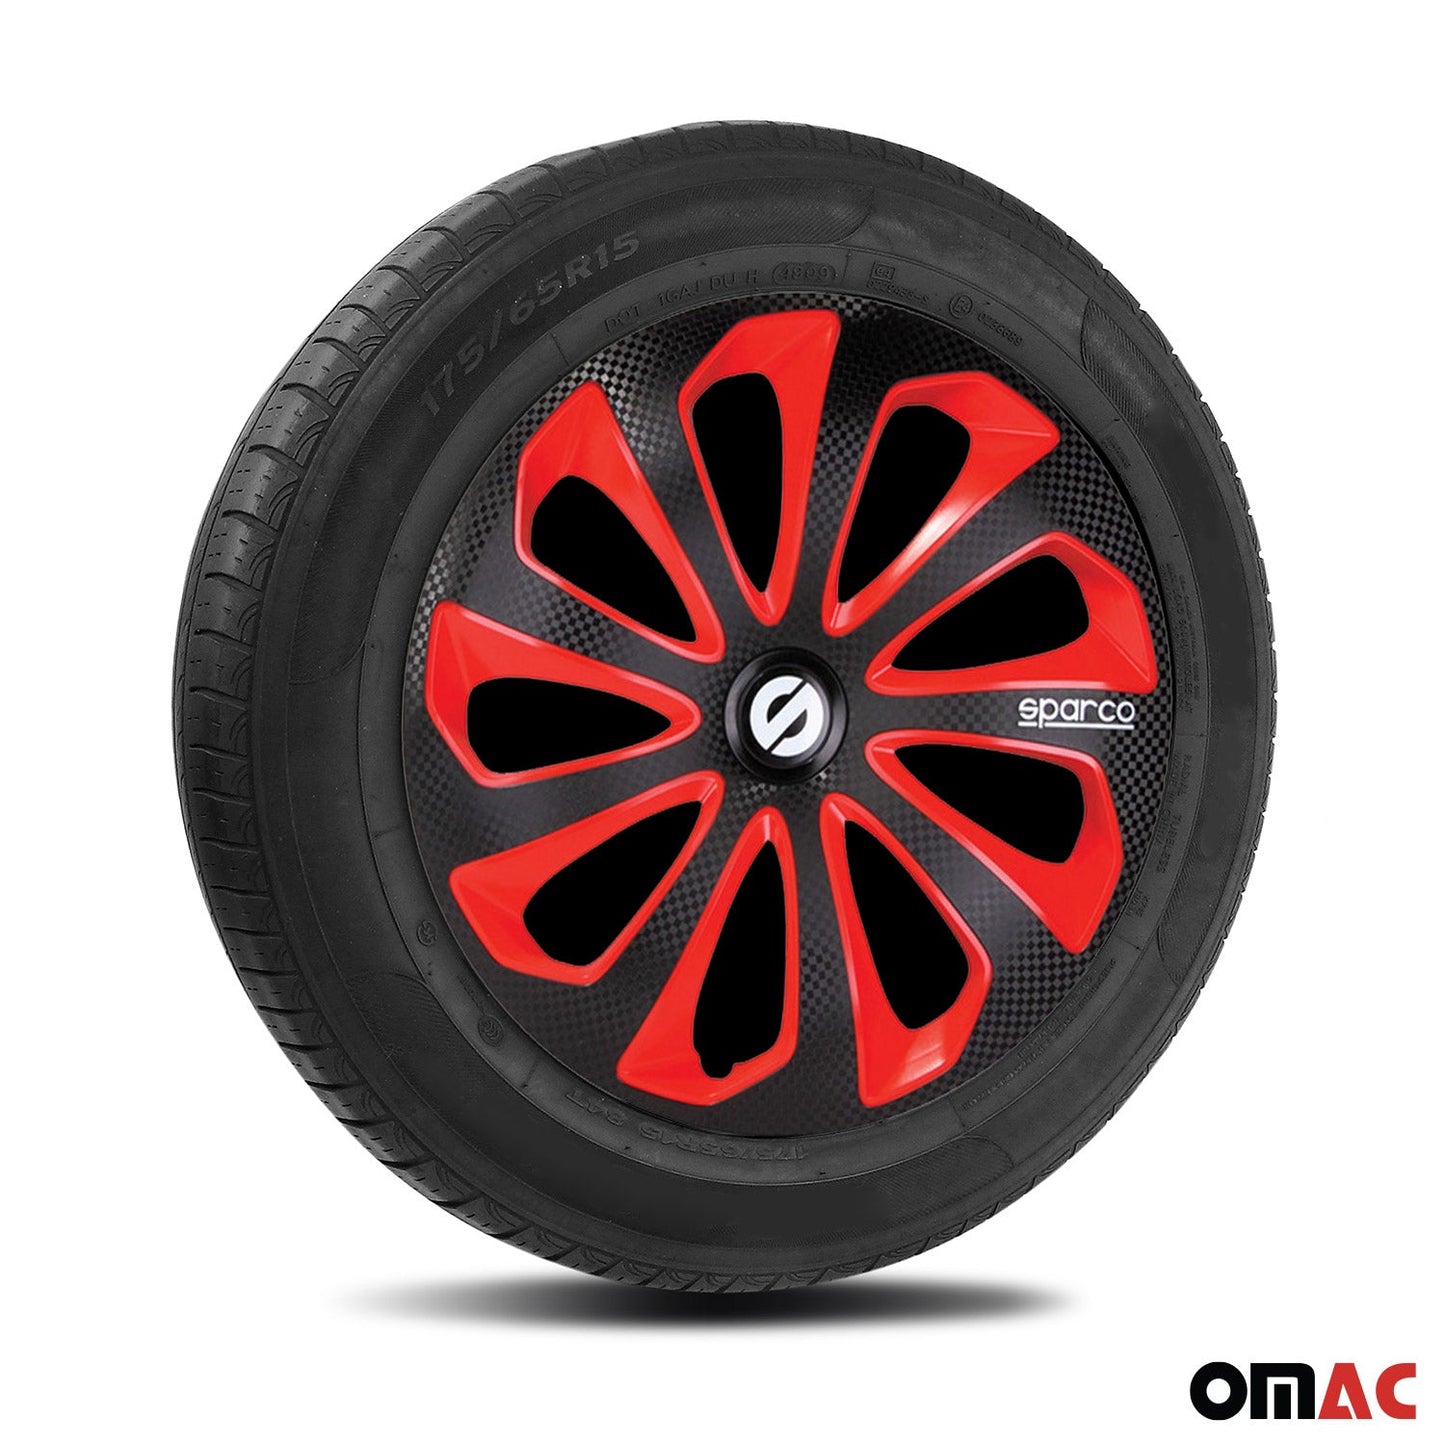 OMAC 15" Sparco Sicilia Wheel Covers Hubcaps Black Red Carbon 4 Pcs 96SPC1575BKRDC